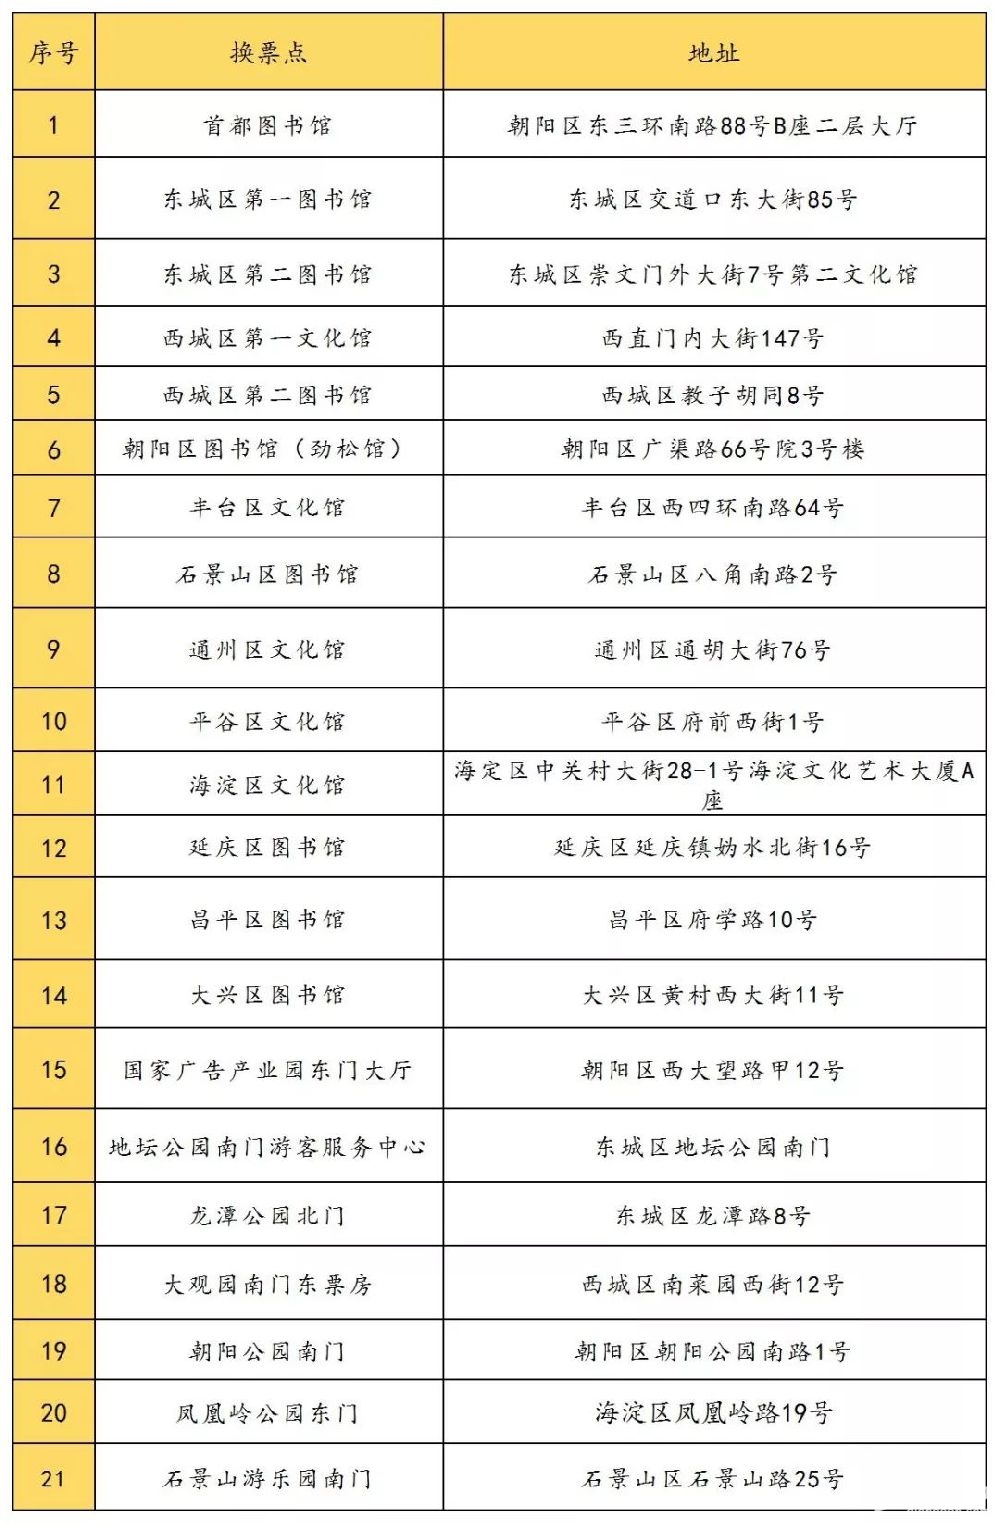 2019北京春节庙会免费门票普通市民抢票攻略（抢票时间、抢票方式）[墙根网]